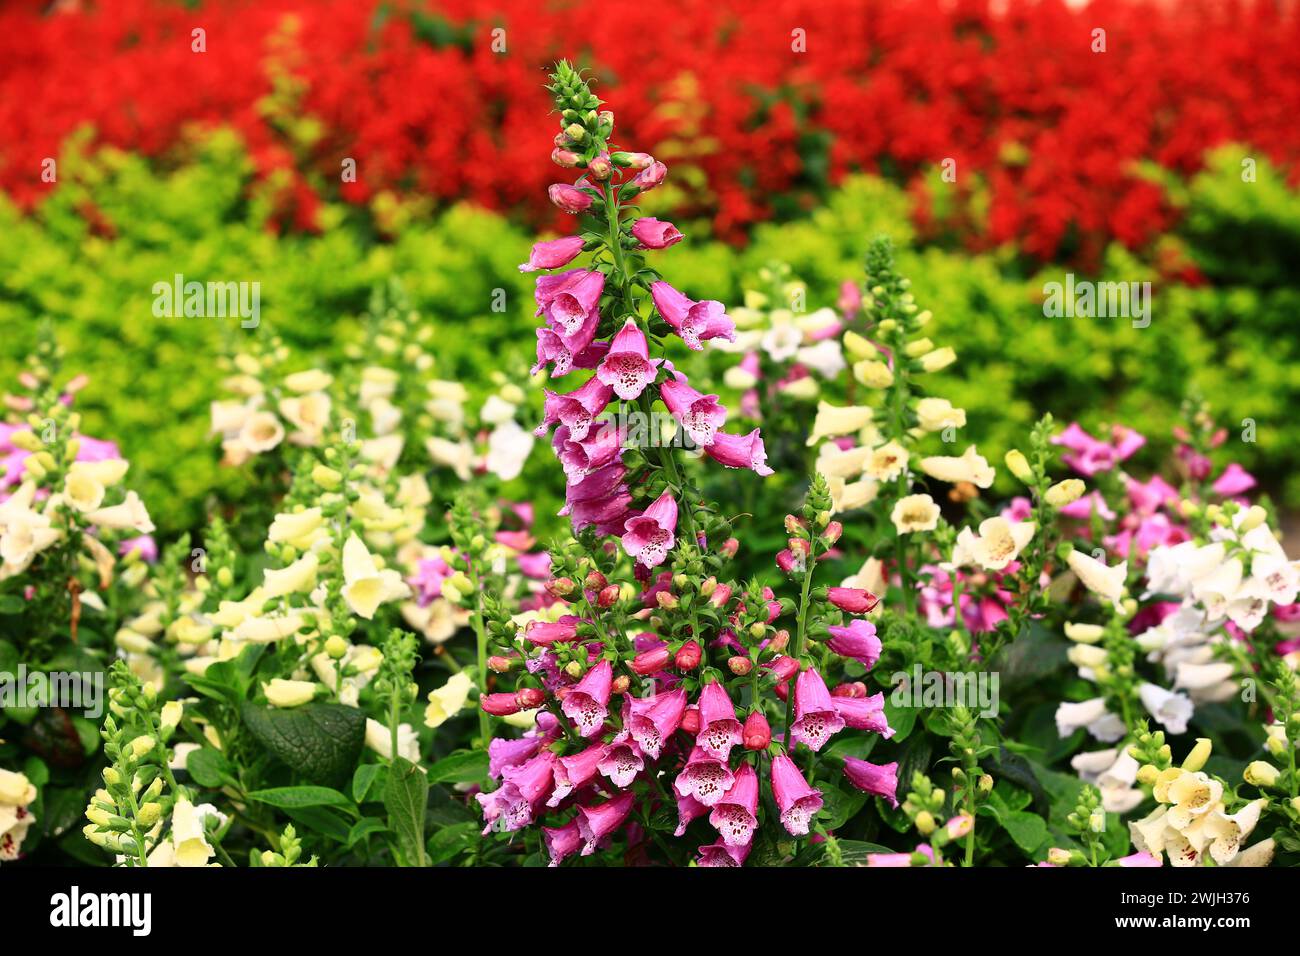 Fioritura di fiori comuni di foga, primo piano di bellissimi fiori viola e bianchi di foga comune che crescono nel giardino Foto Stock